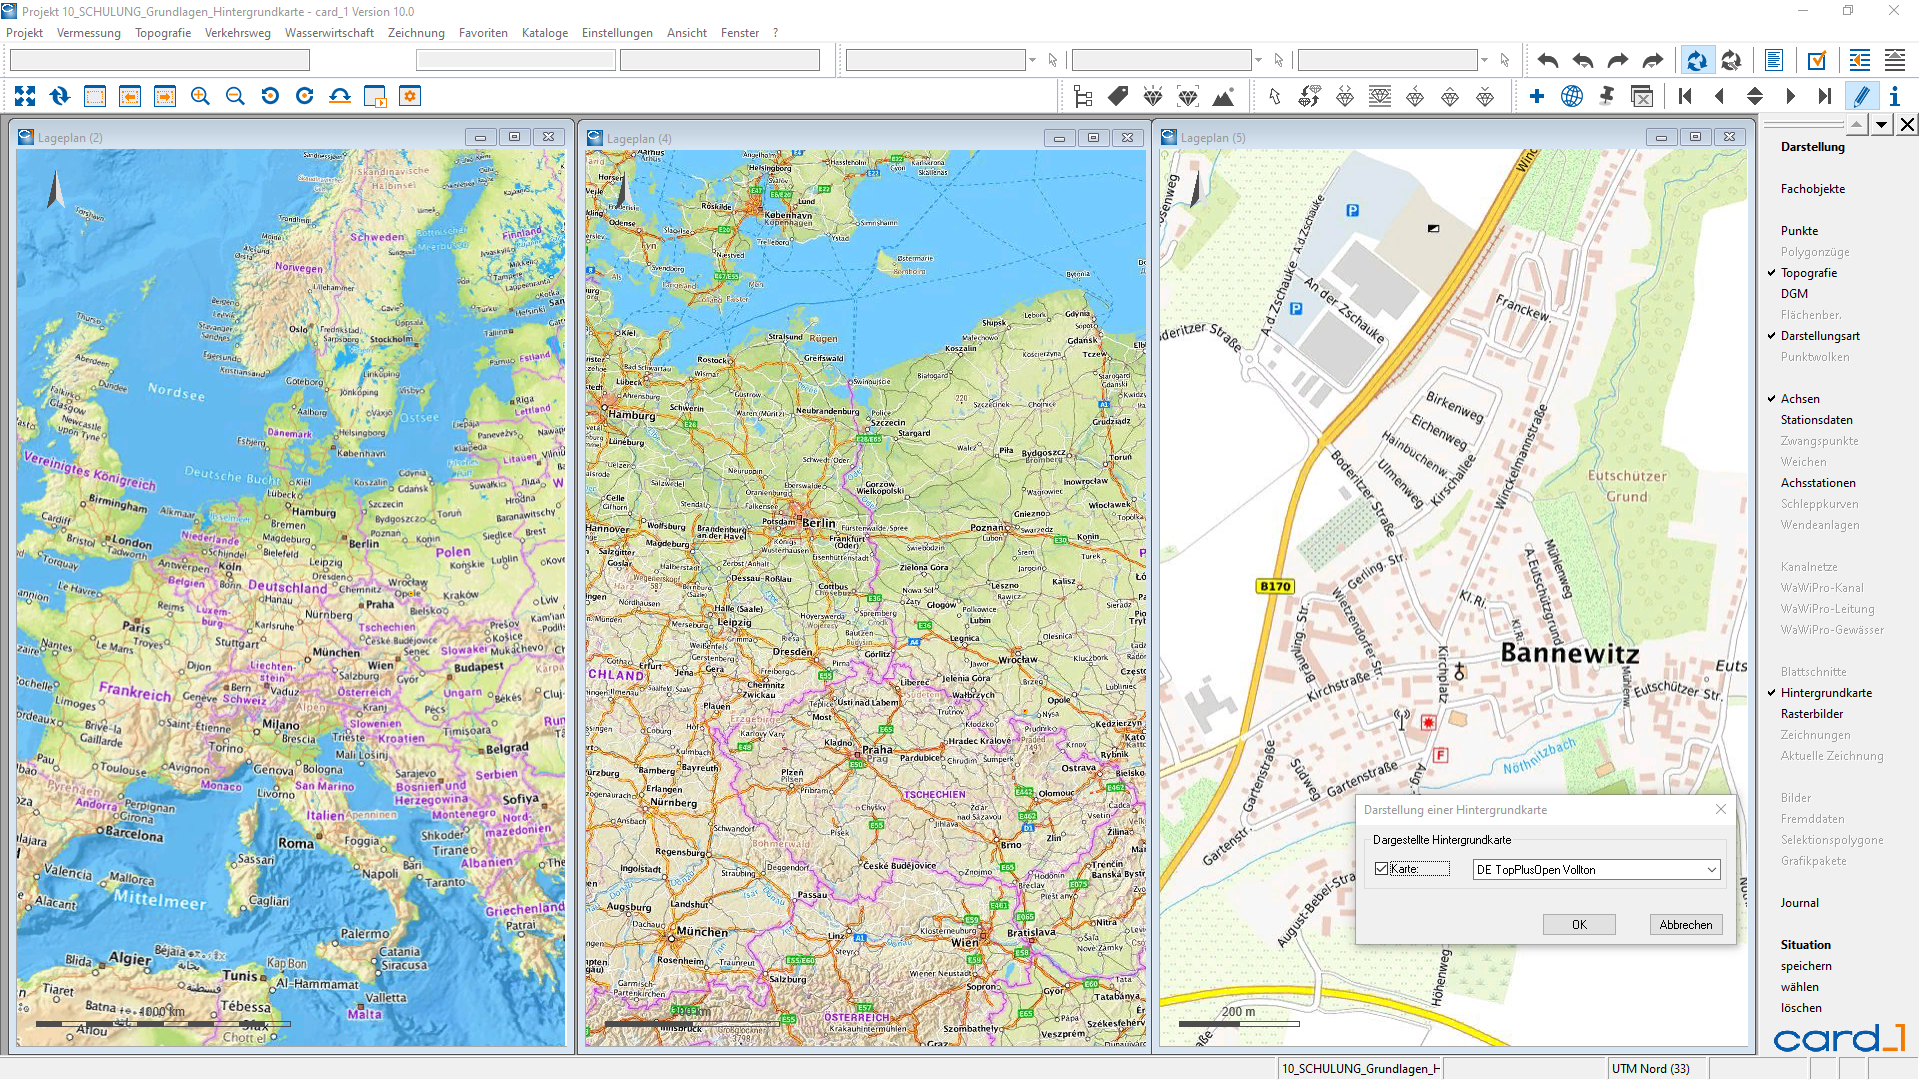 Abbildung 2: Der WMS-Dienst TopPlusOpen zeigt abhängig von der Größe des Lageplanausschnittes Topografische Karten in unterschiedlichen Maßstäben und Detaillierungsgrad an.